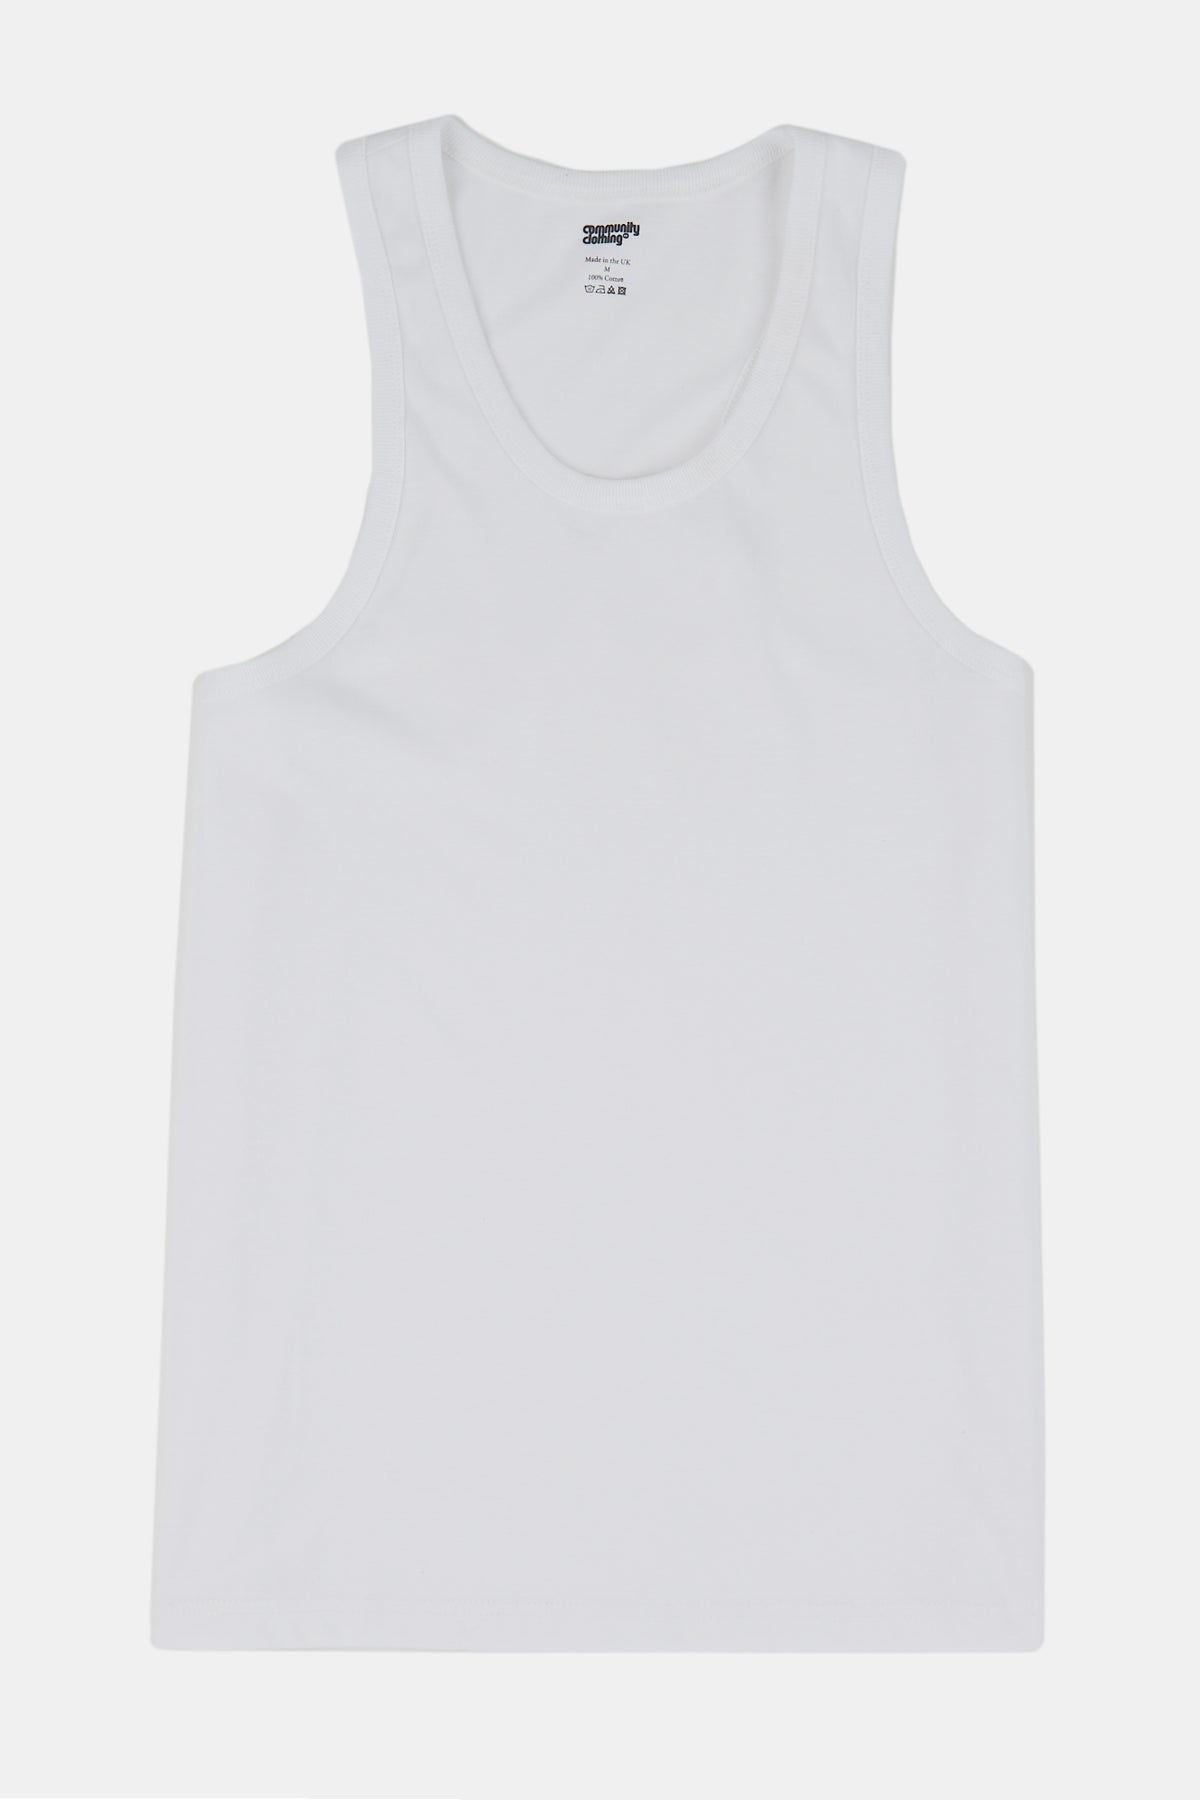 
            Flatlay product shot of men&#39;s racer back vest plastic free in white